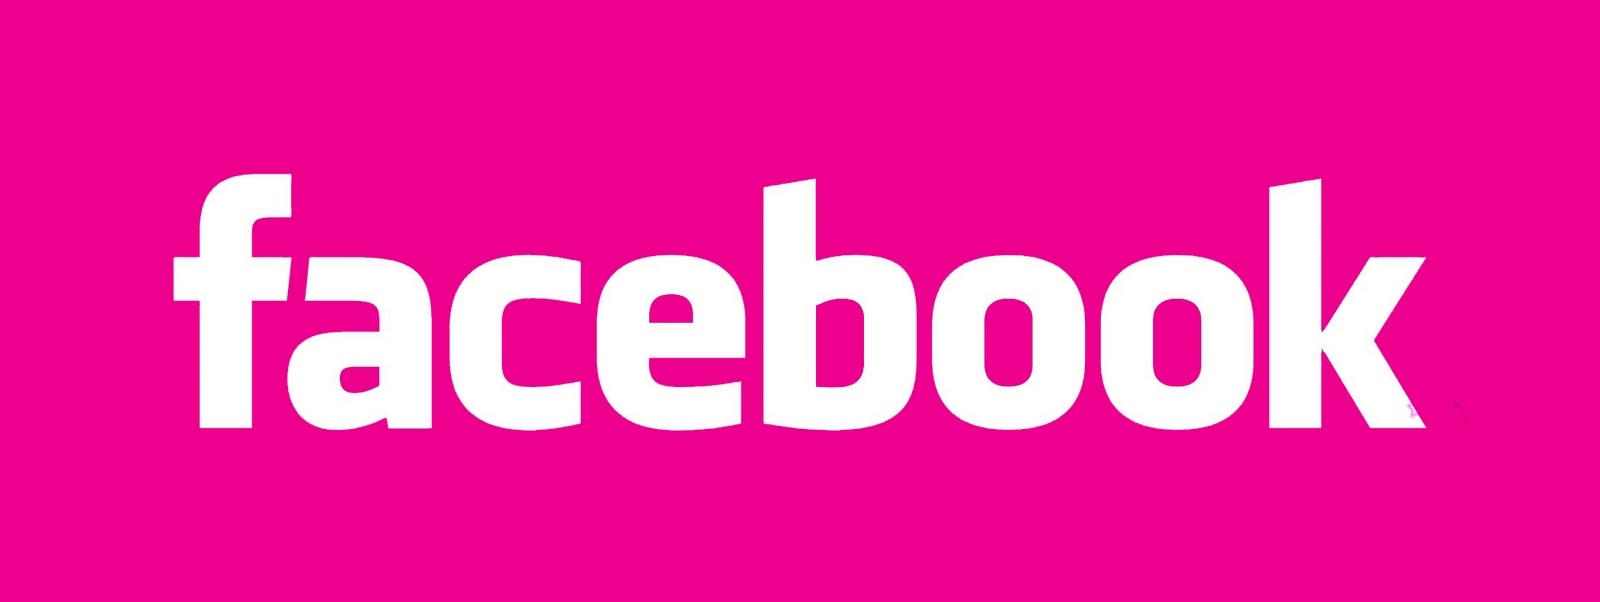 http://2.bp.blogspot.com/_73nAeRneLzU/TJGYeG5yzKI/AAAAAAAAHMA/aWag46CtgPg/s1600/facebook-logo-pink.jpg